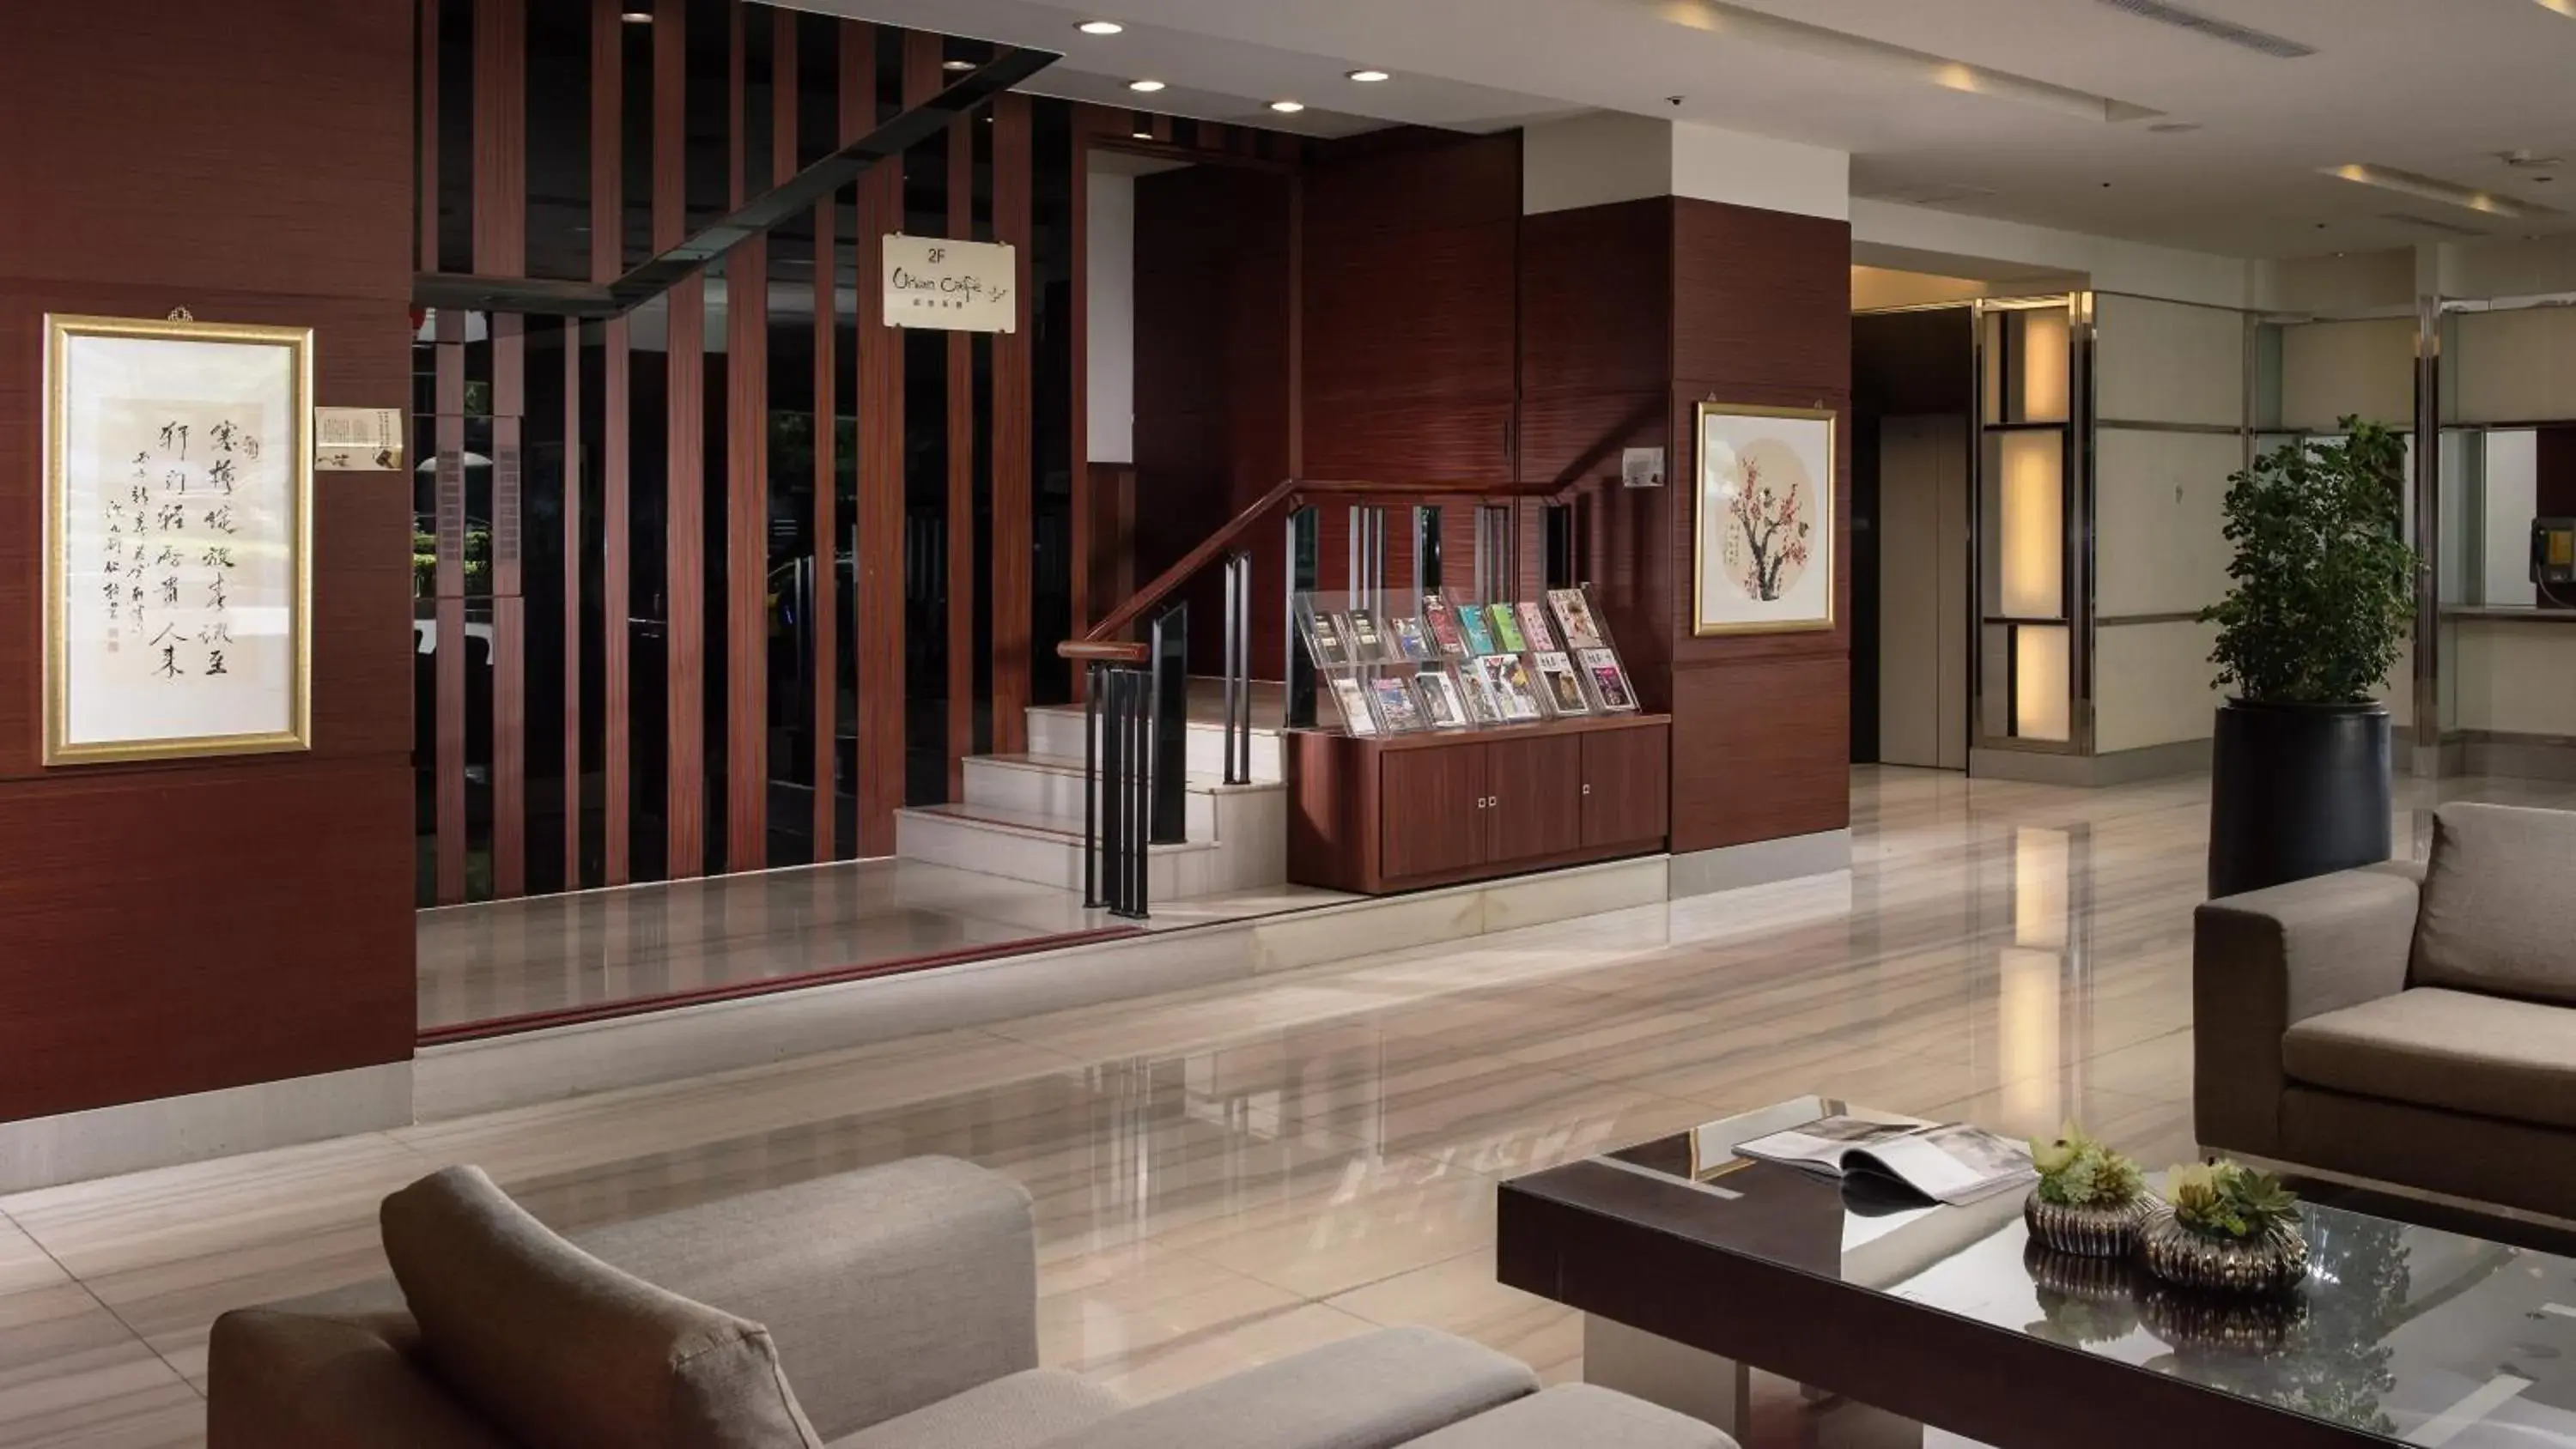 Lobby or reception, Lobby/Reception in Urban Hotel 33